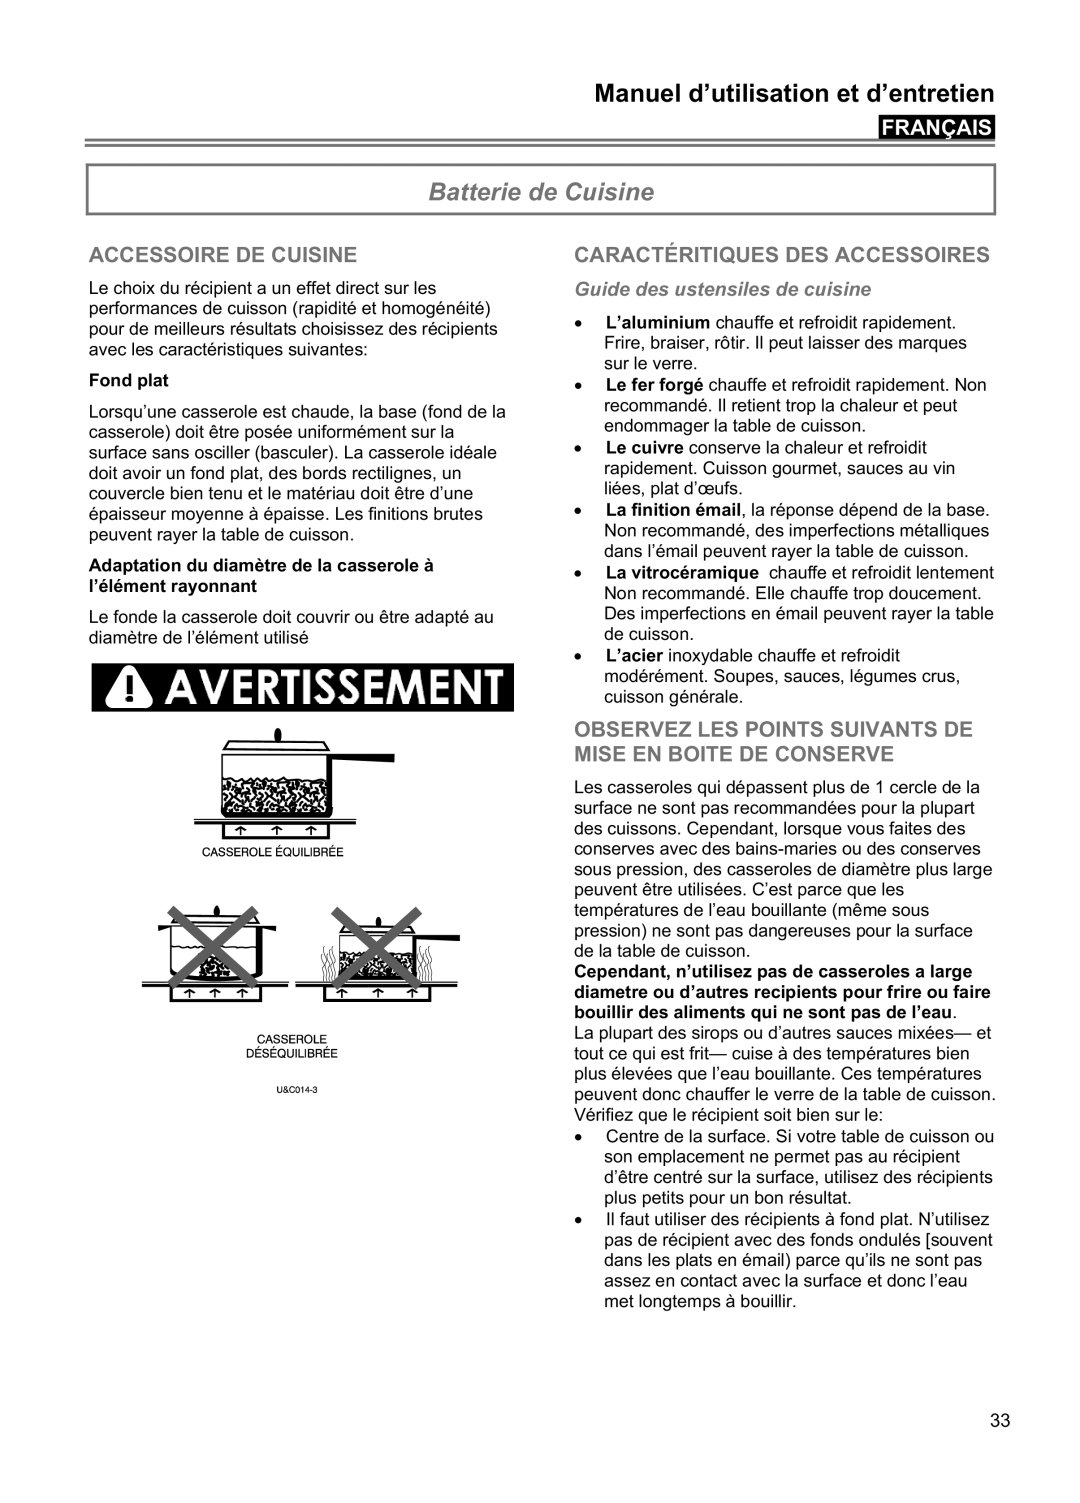 Blomberg CTE 30400, CTE 36500 Batterie de Cuisine, Accessoire De Cuisine, Caractéritiques Des Accessoires, Français 